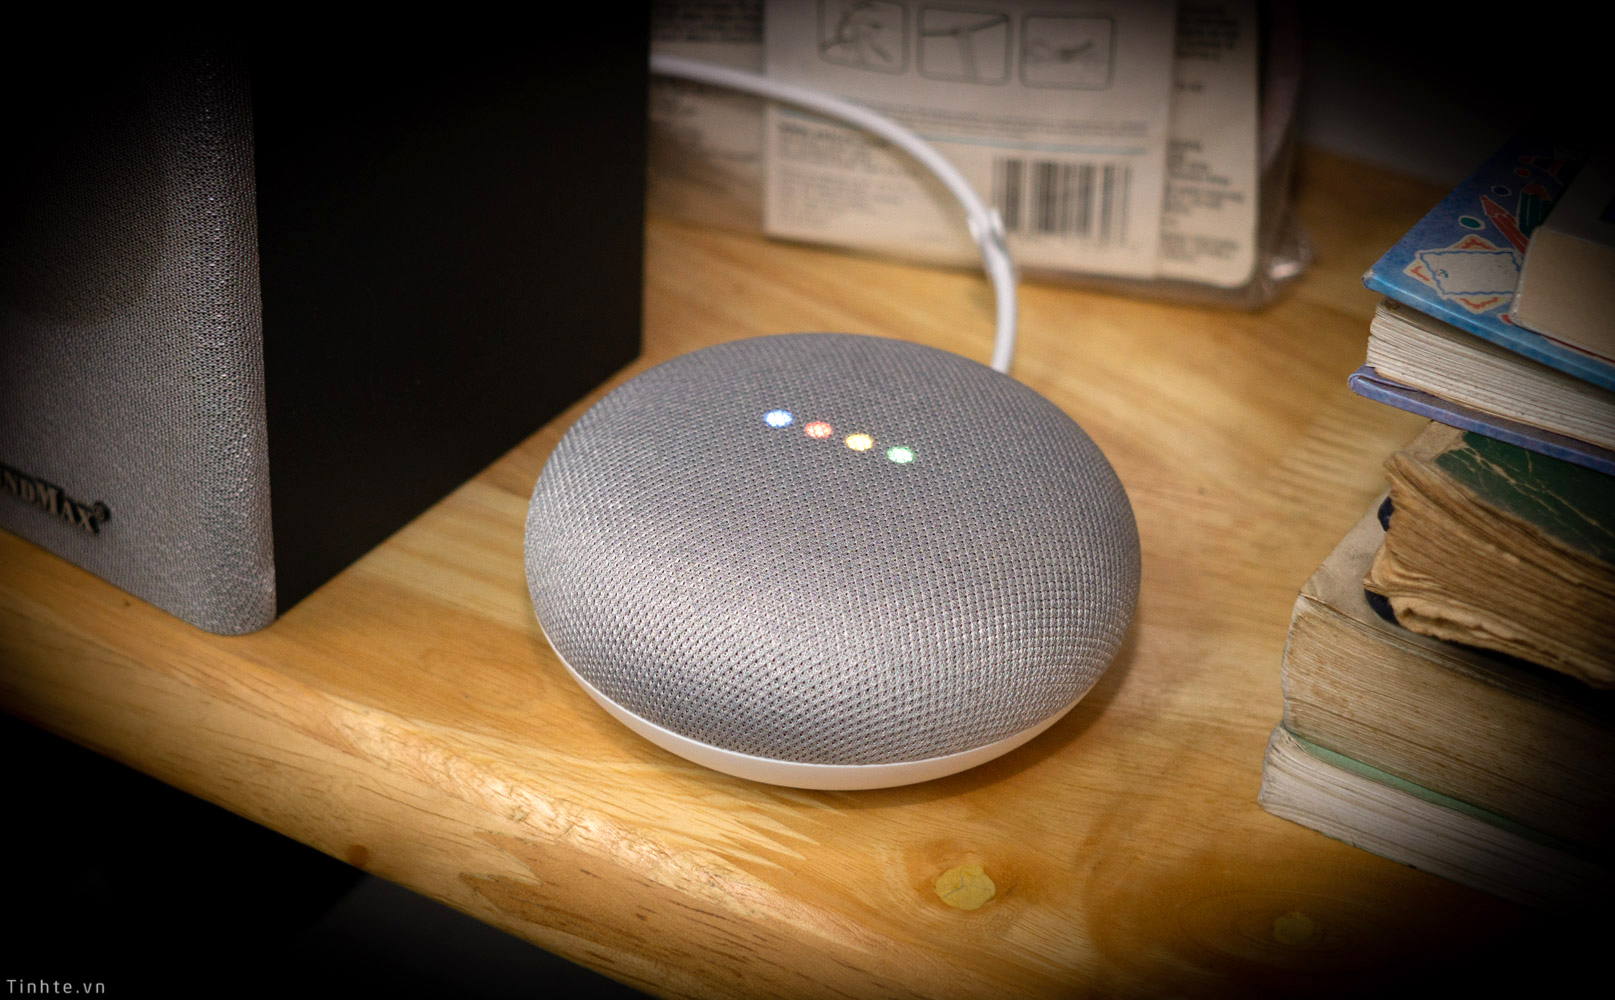 Google Home Mini: Google Home Mini là trợ lý ảo thông minh giúp kiểm soát thiết bị trong nhà của bạn chỉ qua giọng nói. Sản phẩm đã được cập nhật nhiều tính năng mới, đem lại trải nghiệm tuyệt vời cho người dùng. Bạn sẽ dễ dàng điều khiển âm nhạc, đèn chiếu sáng hay xem tin tức, thời tiết thông qua Google Home Mini.